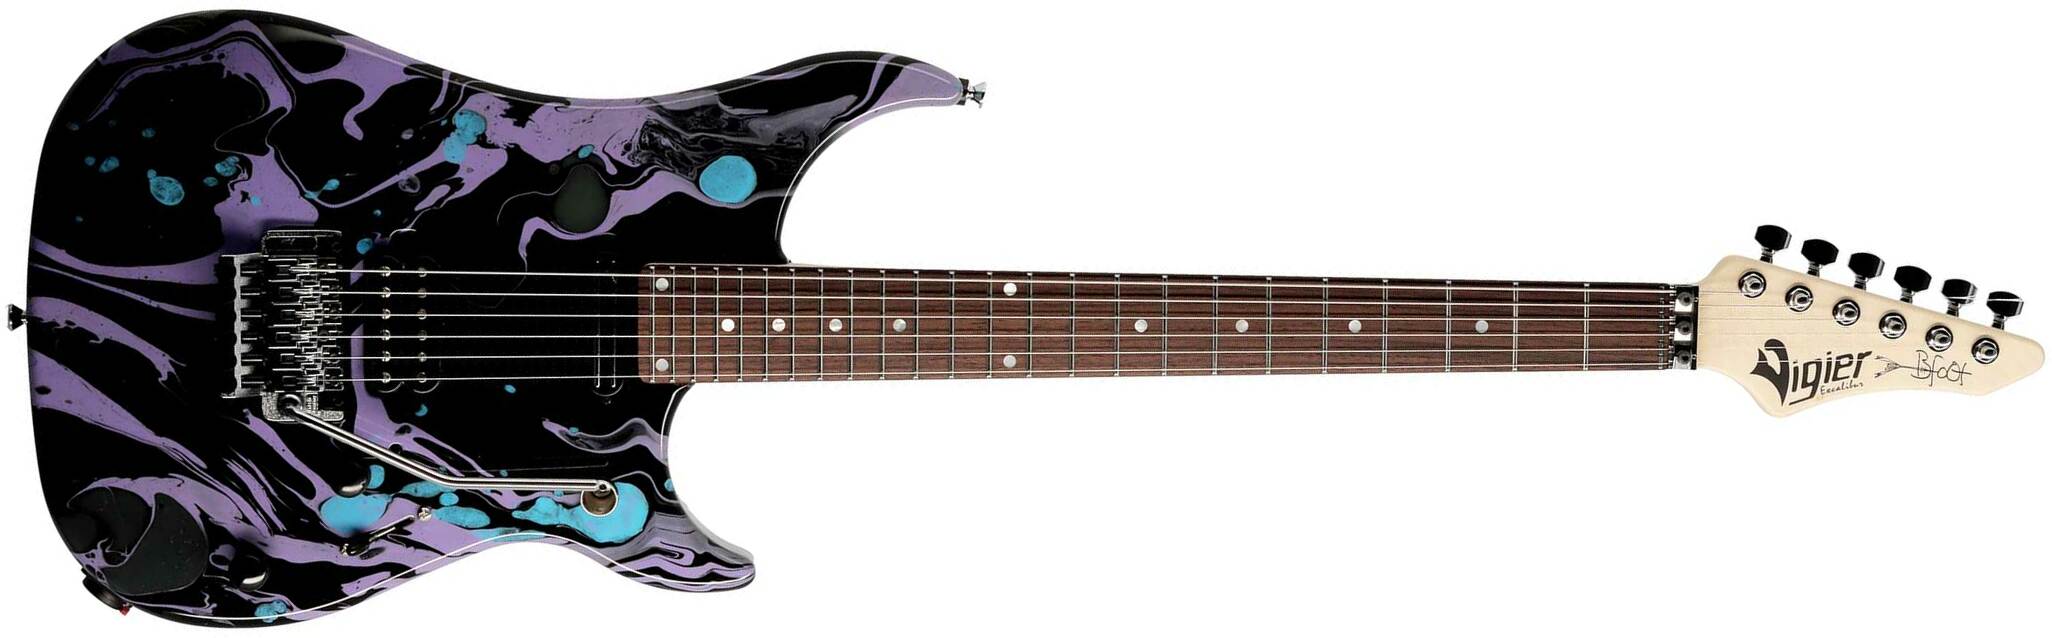 Vigier Ron Thal Bfoot Excalibur Signature Hs Fr Rw - Rock Art Black/purple/blue - Guitare Électrique Signature - Main picture